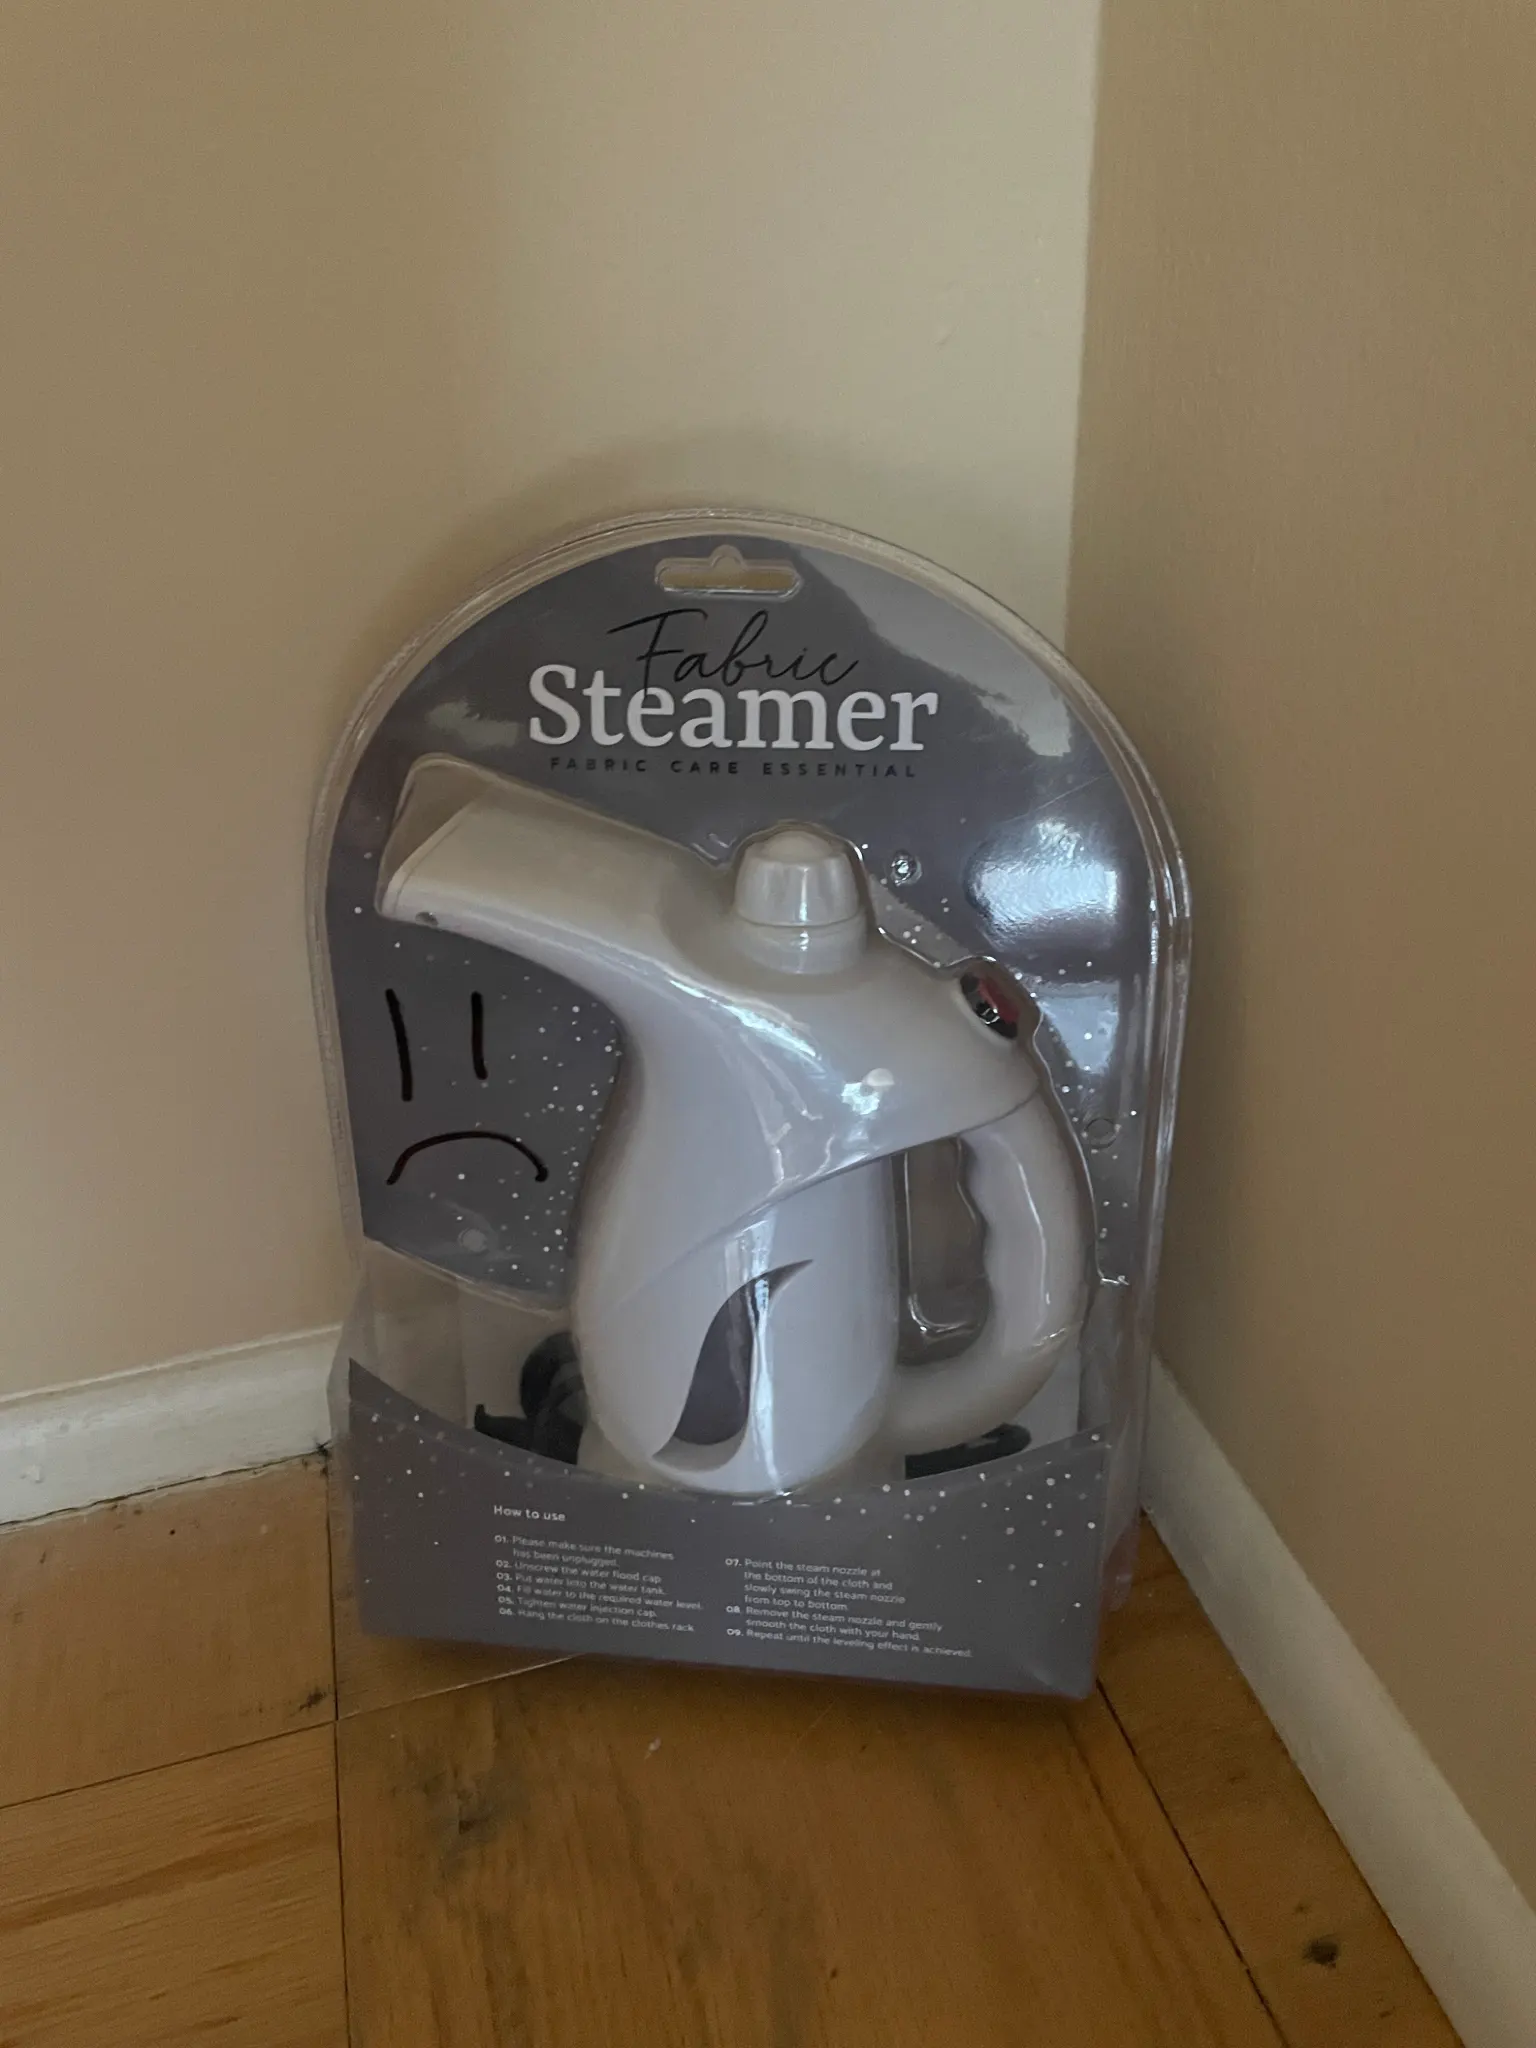 A mini steamer.